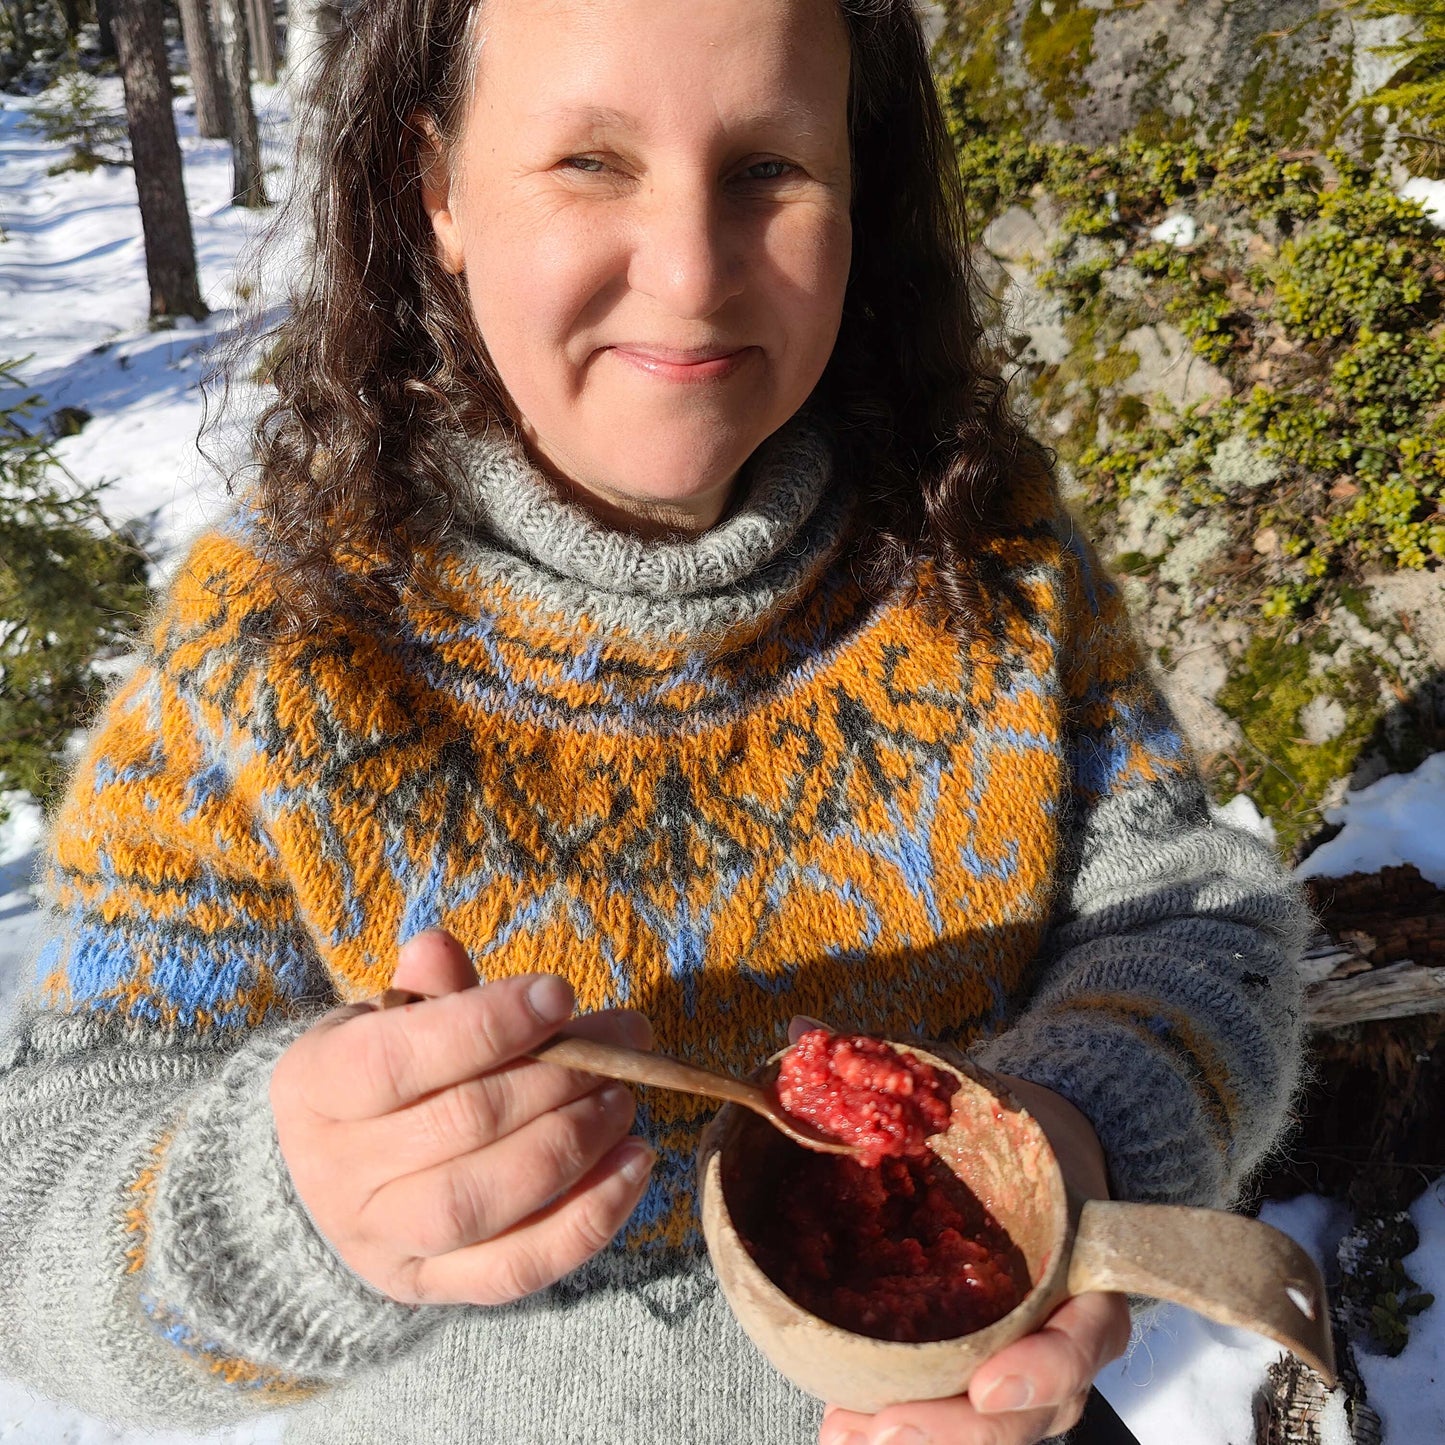 Omena-vadelma jälkiruokapaistos, retkiruoka valmiina kupilka-astiassa ja lusikassa tummatukkaisen harmaa villapaitaisen naisen kädessä lumisessa metsässä.